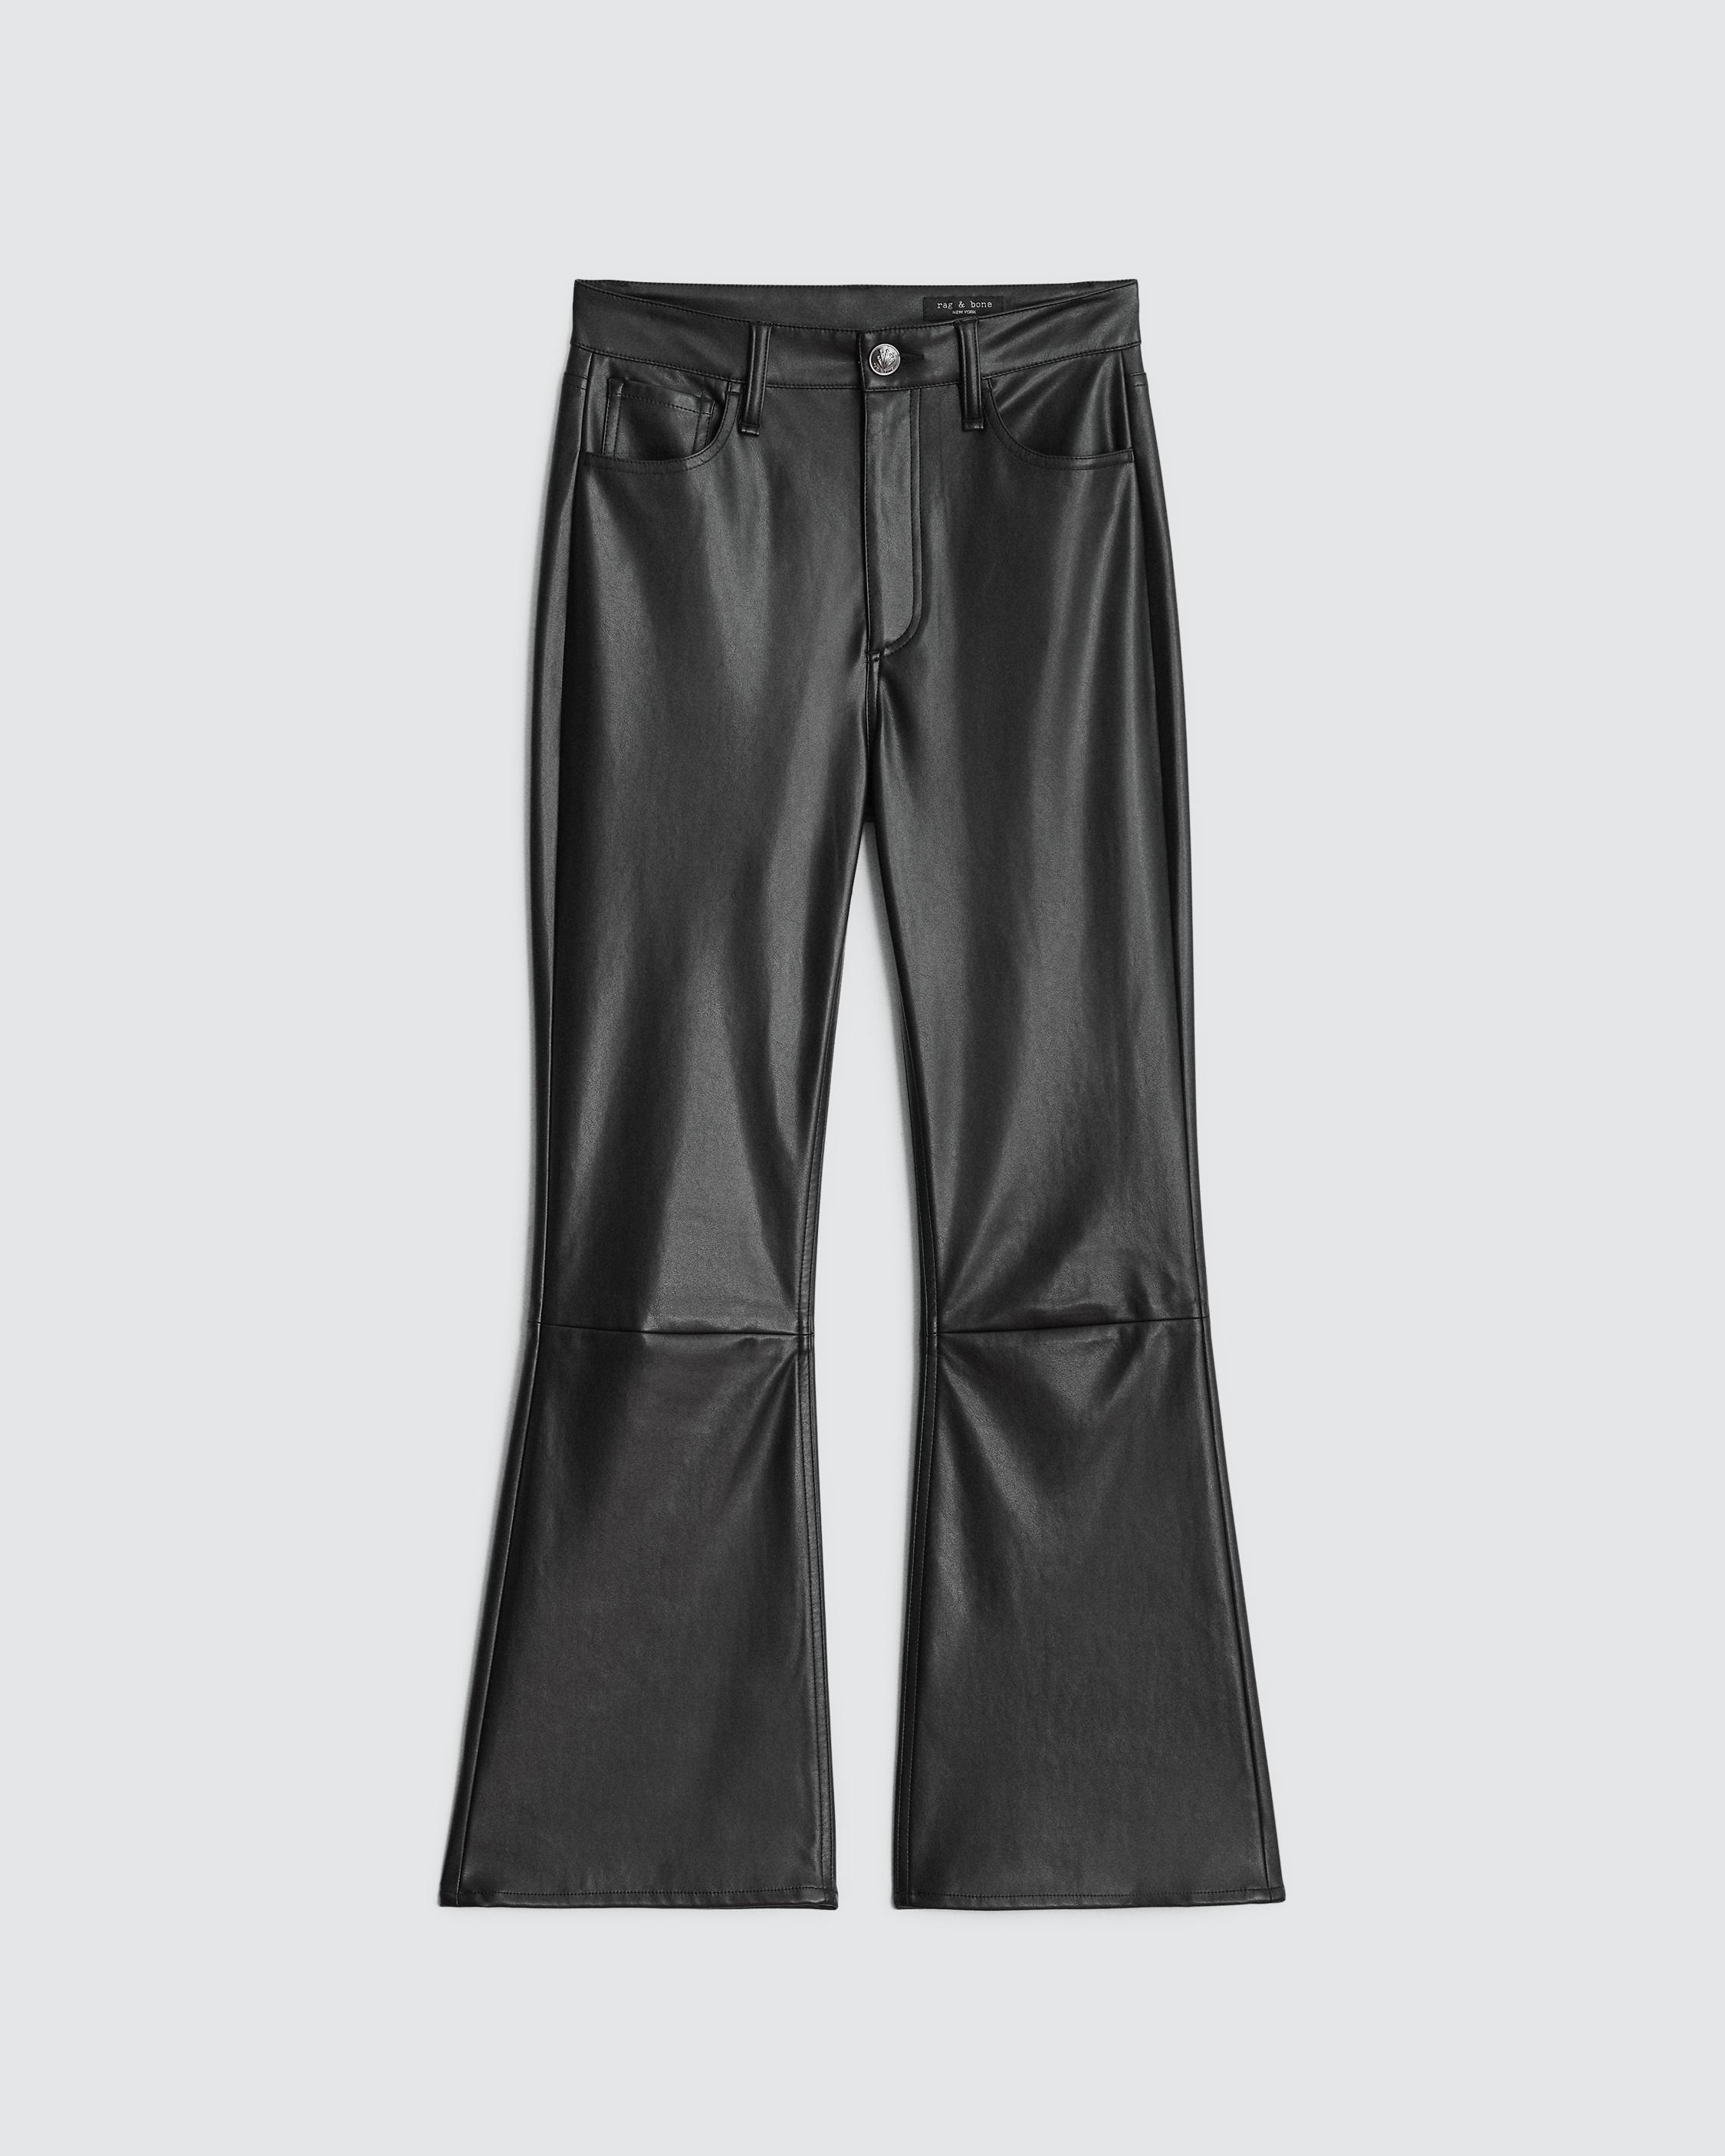 Shop Women's Pants in Various Styles & Lengths | rag & bone